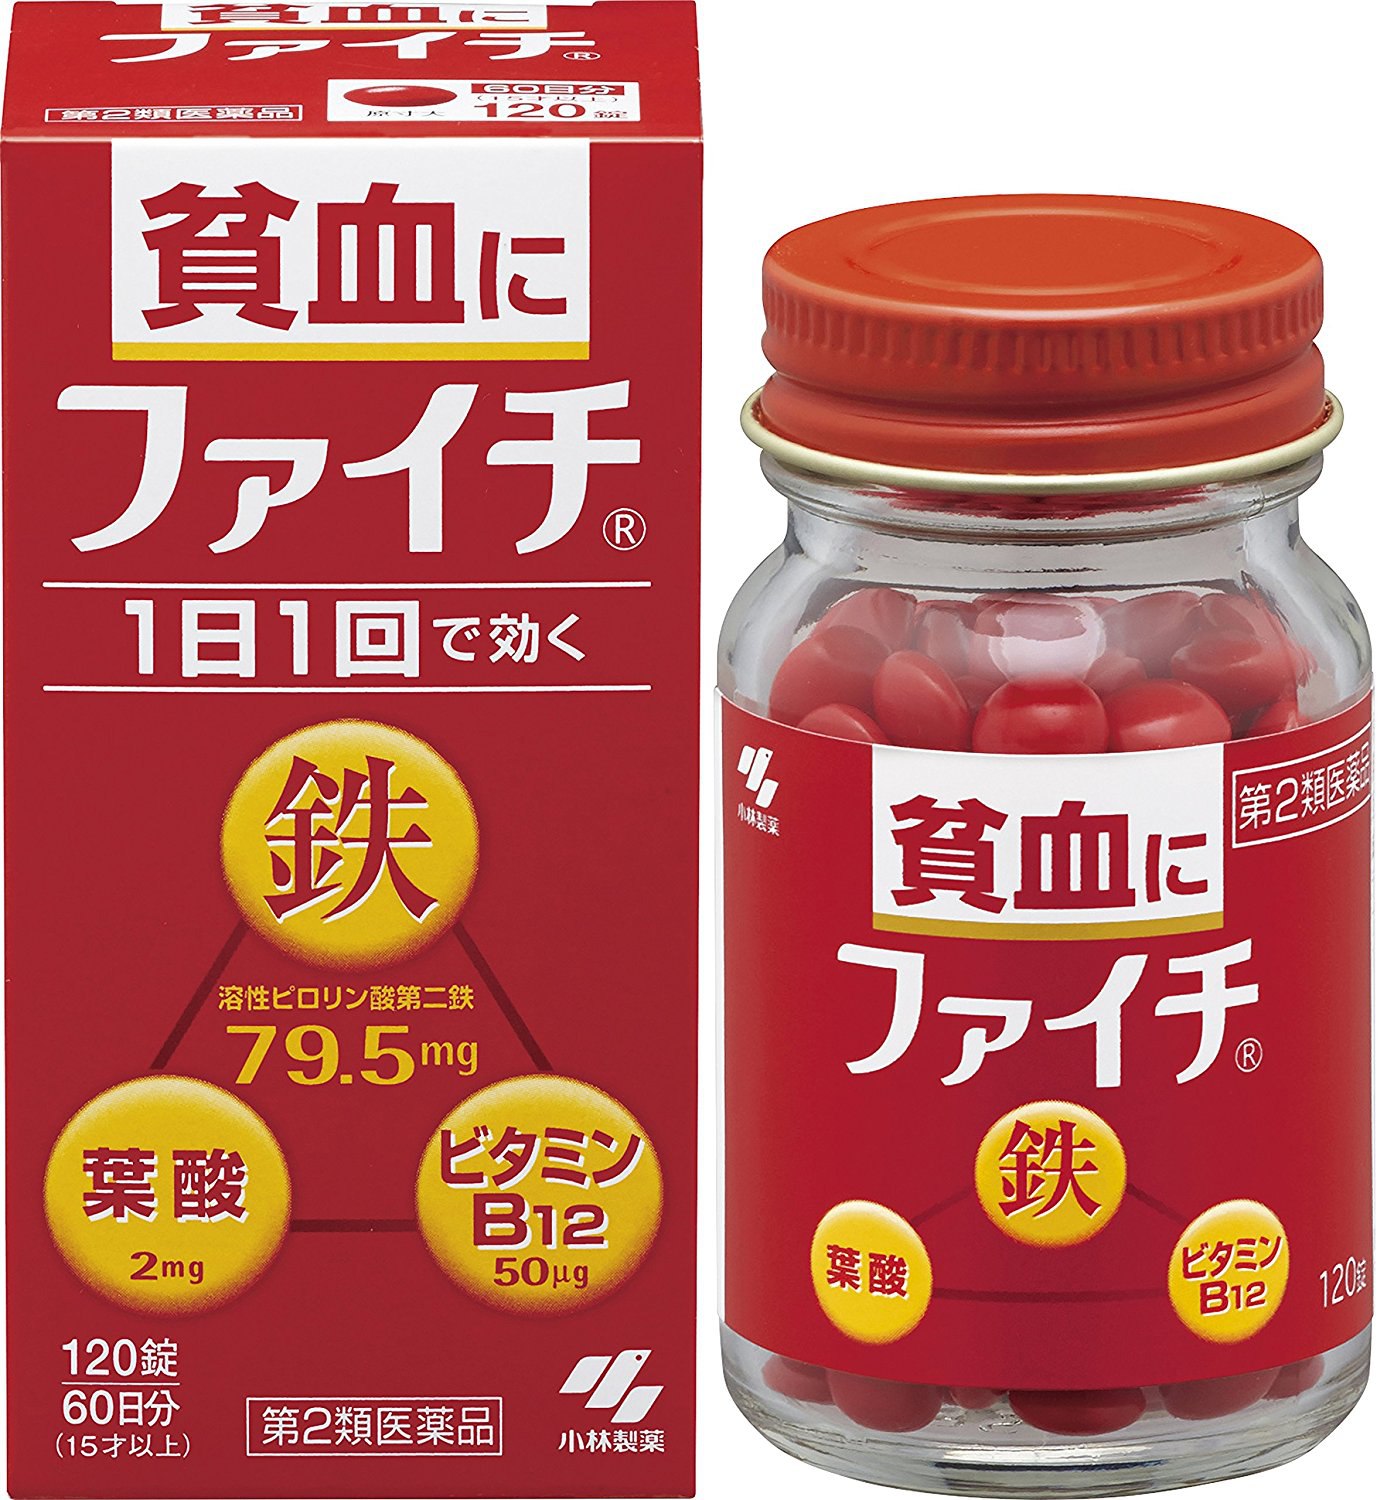 Гемовое железо препараты. Кобаяши витамины японские. Японские витамины железо. Японские БАДЫ железо. Японские витамины b12.